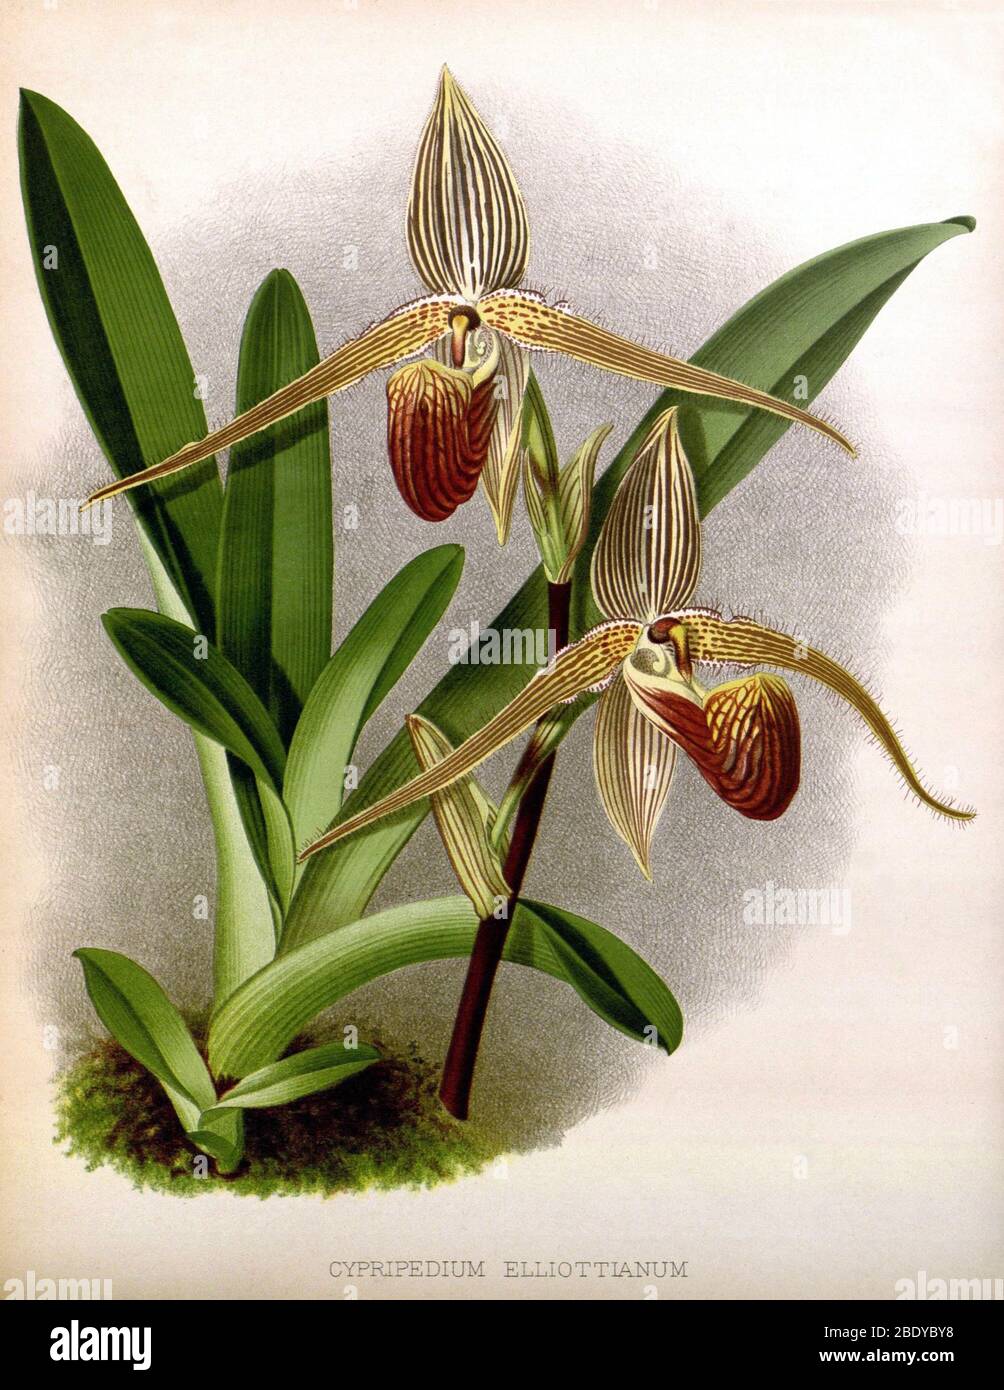 Orchid, Cypripedium elliottianum, 1891 Stock Photo